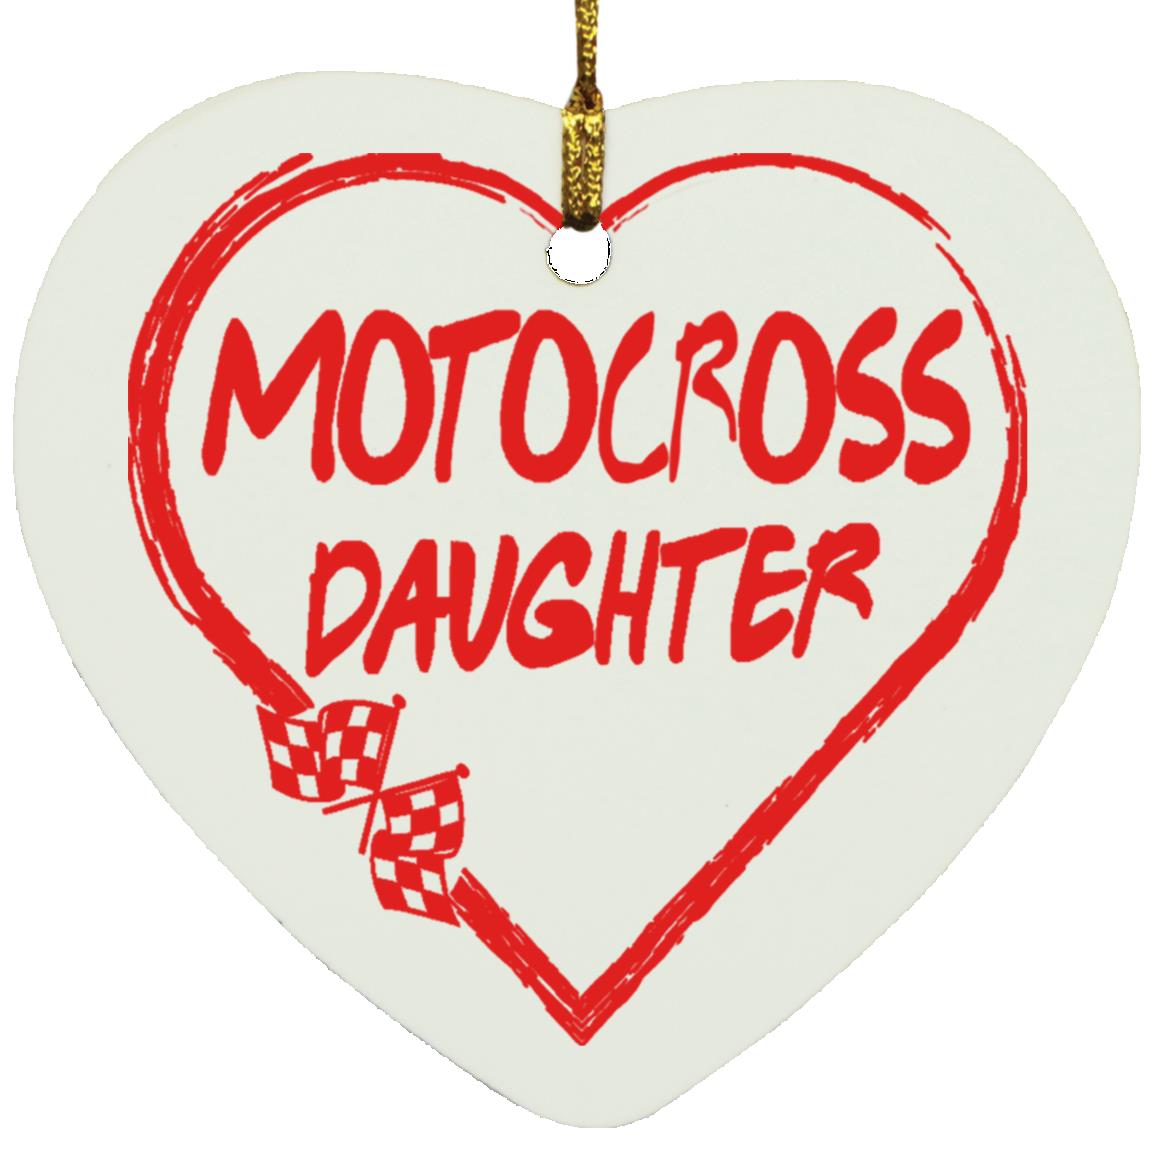 Motocross Daughter Heart Ornament